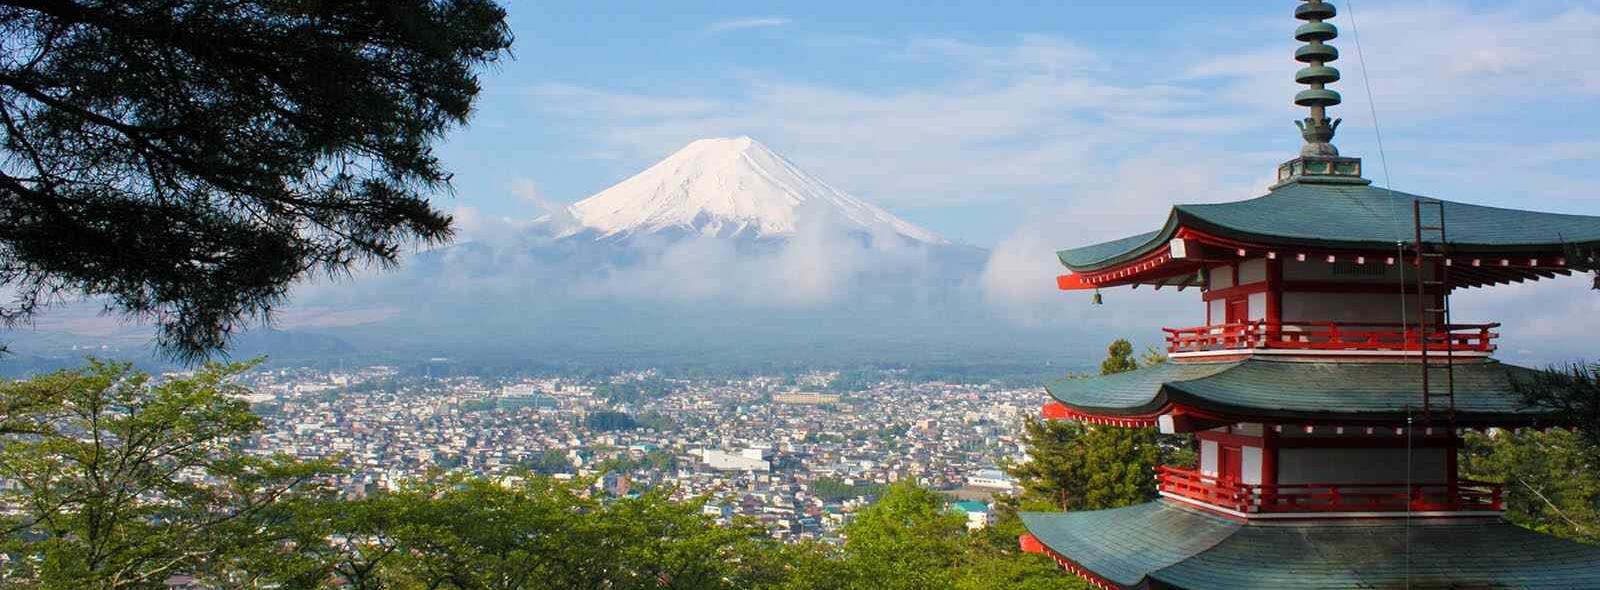 japanse tempel met uizicht over stad en mount fuji